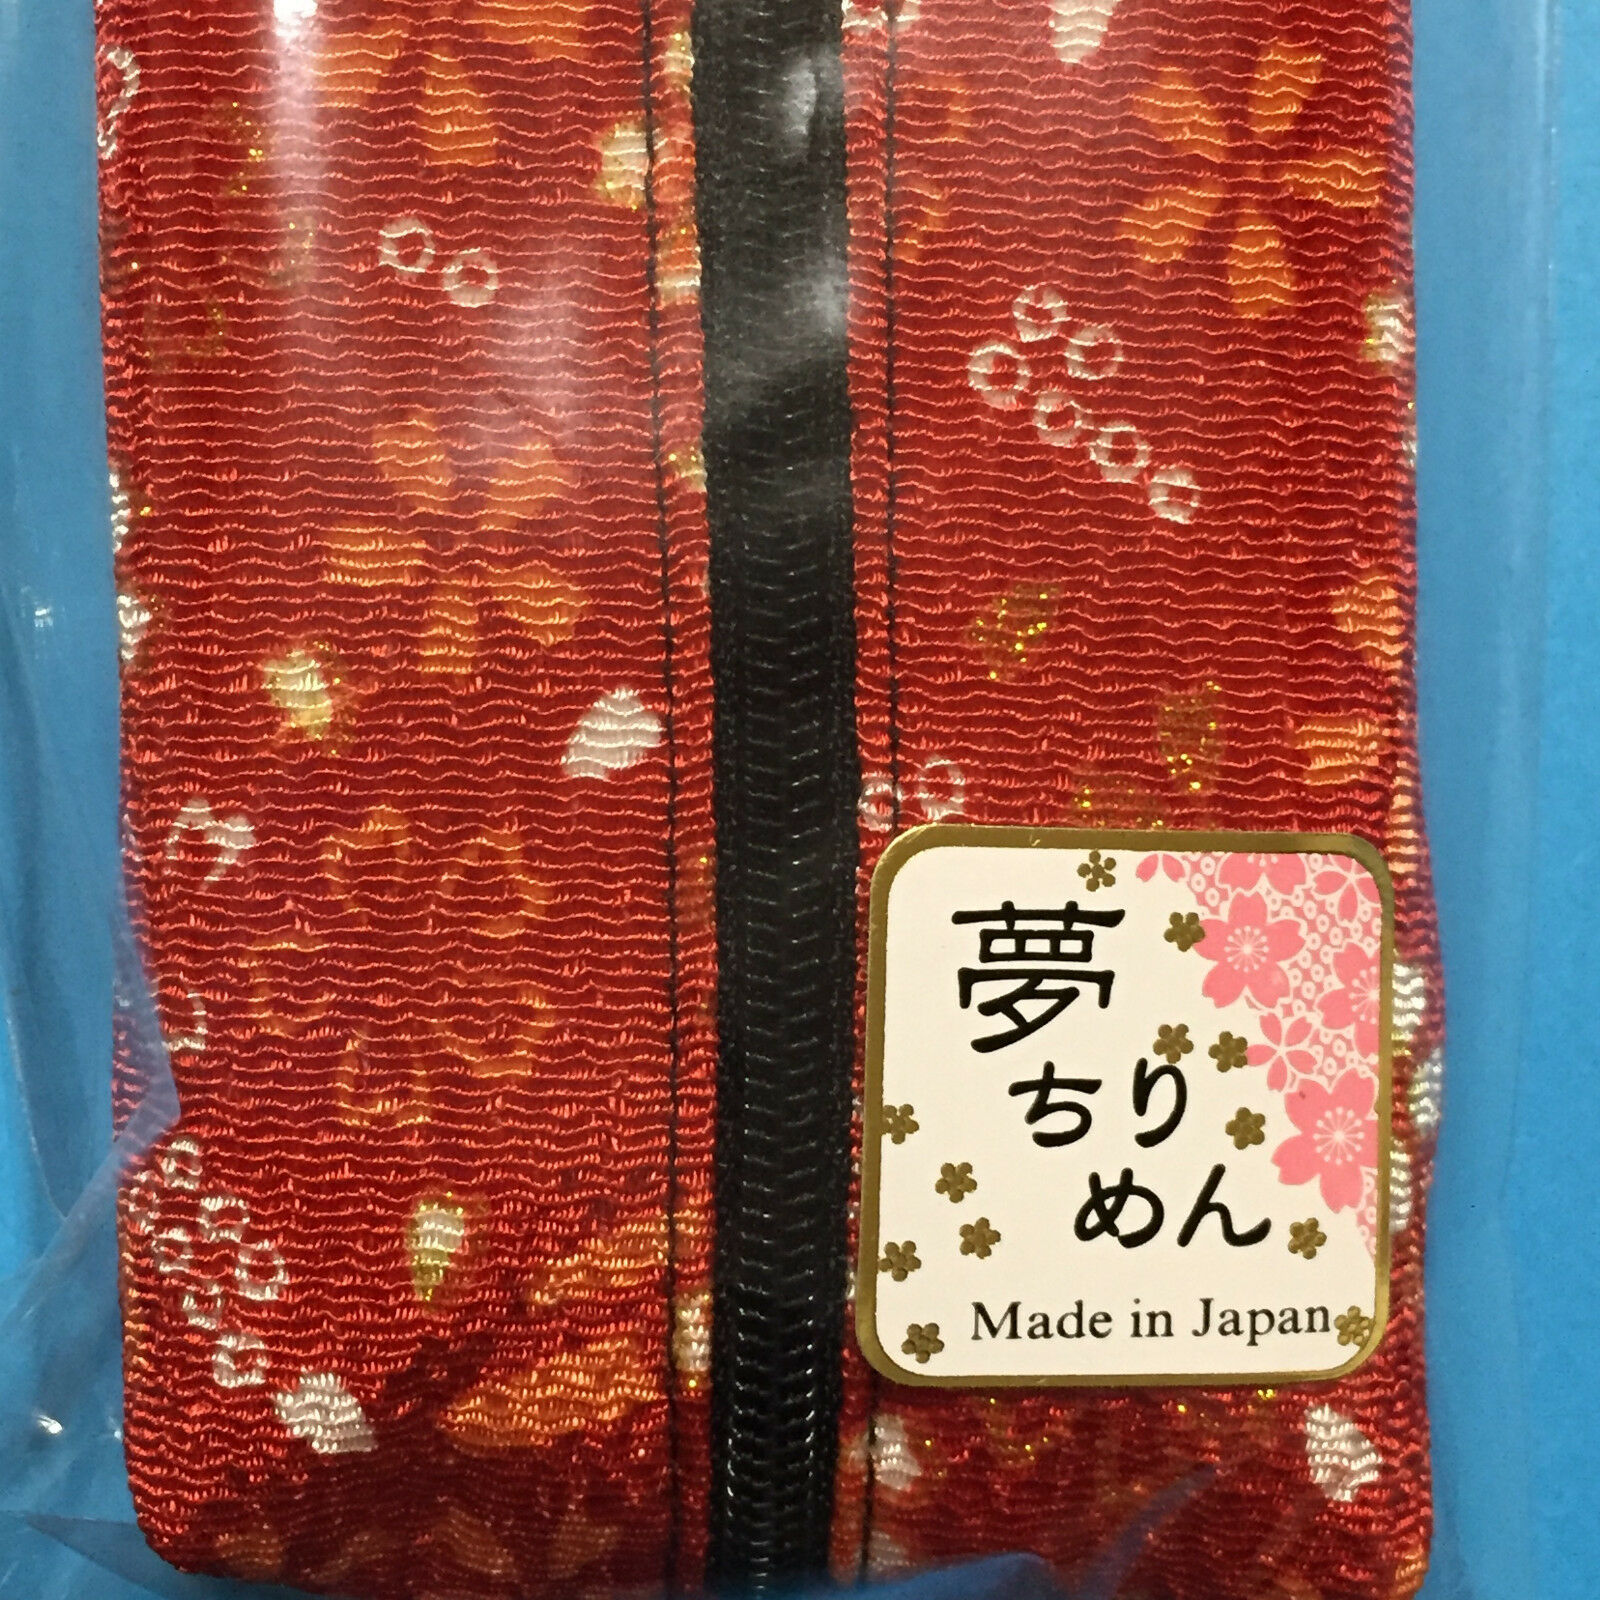 Japanese Chirimen Kimono Crepe Fabric Pen Case Cute Kawaii A Kyoto Japan 